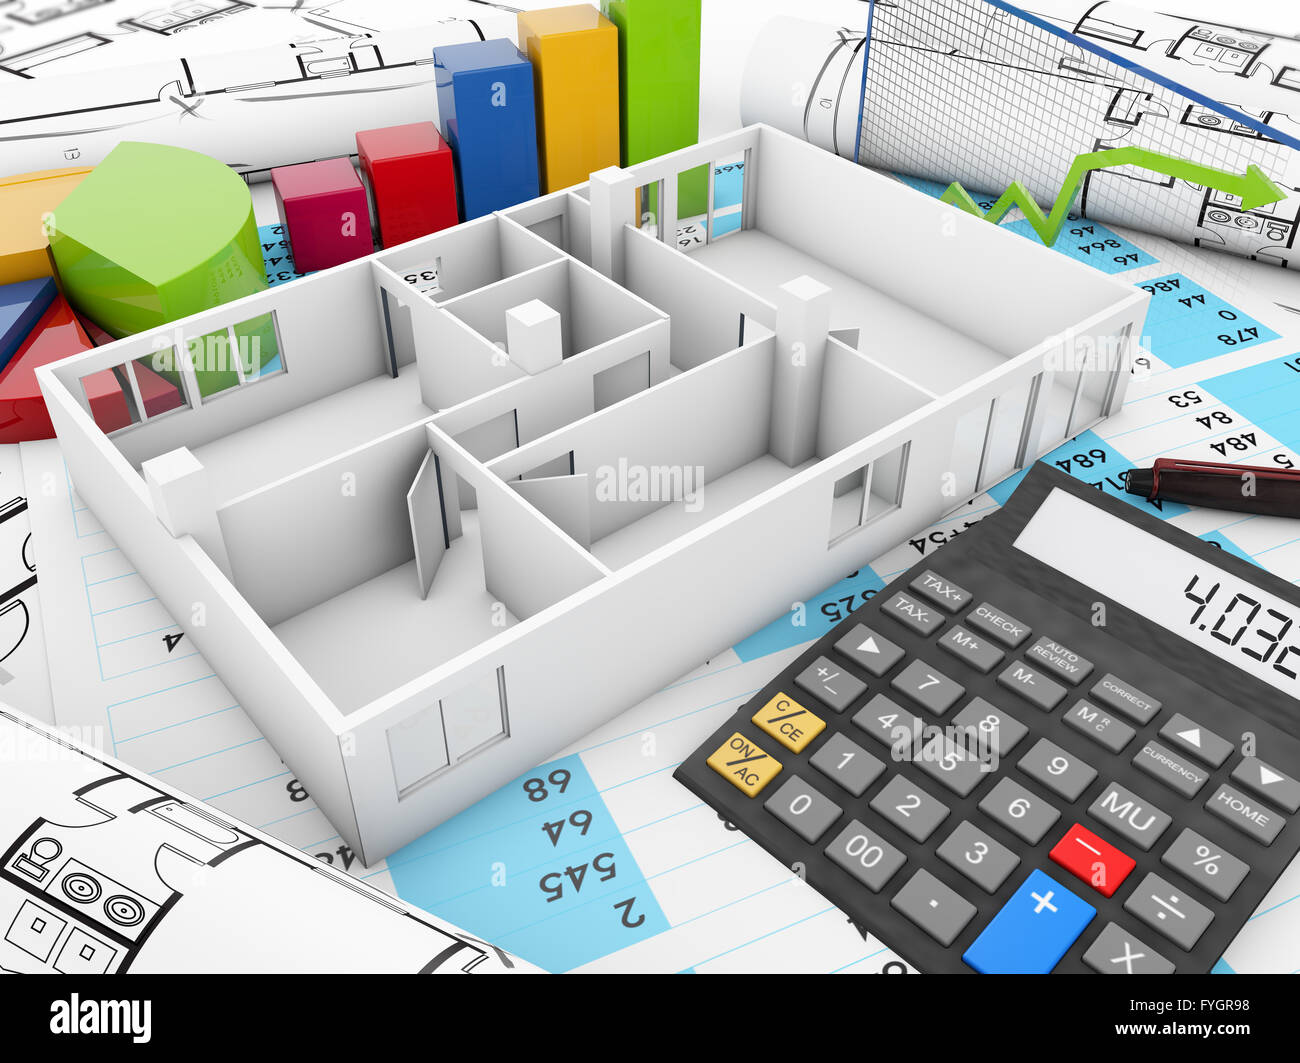 Estructura de costos concepto: estructura de la casa con la calculadora y gráficos sobre parcelas y equilibrar las cuentas Foto de stock